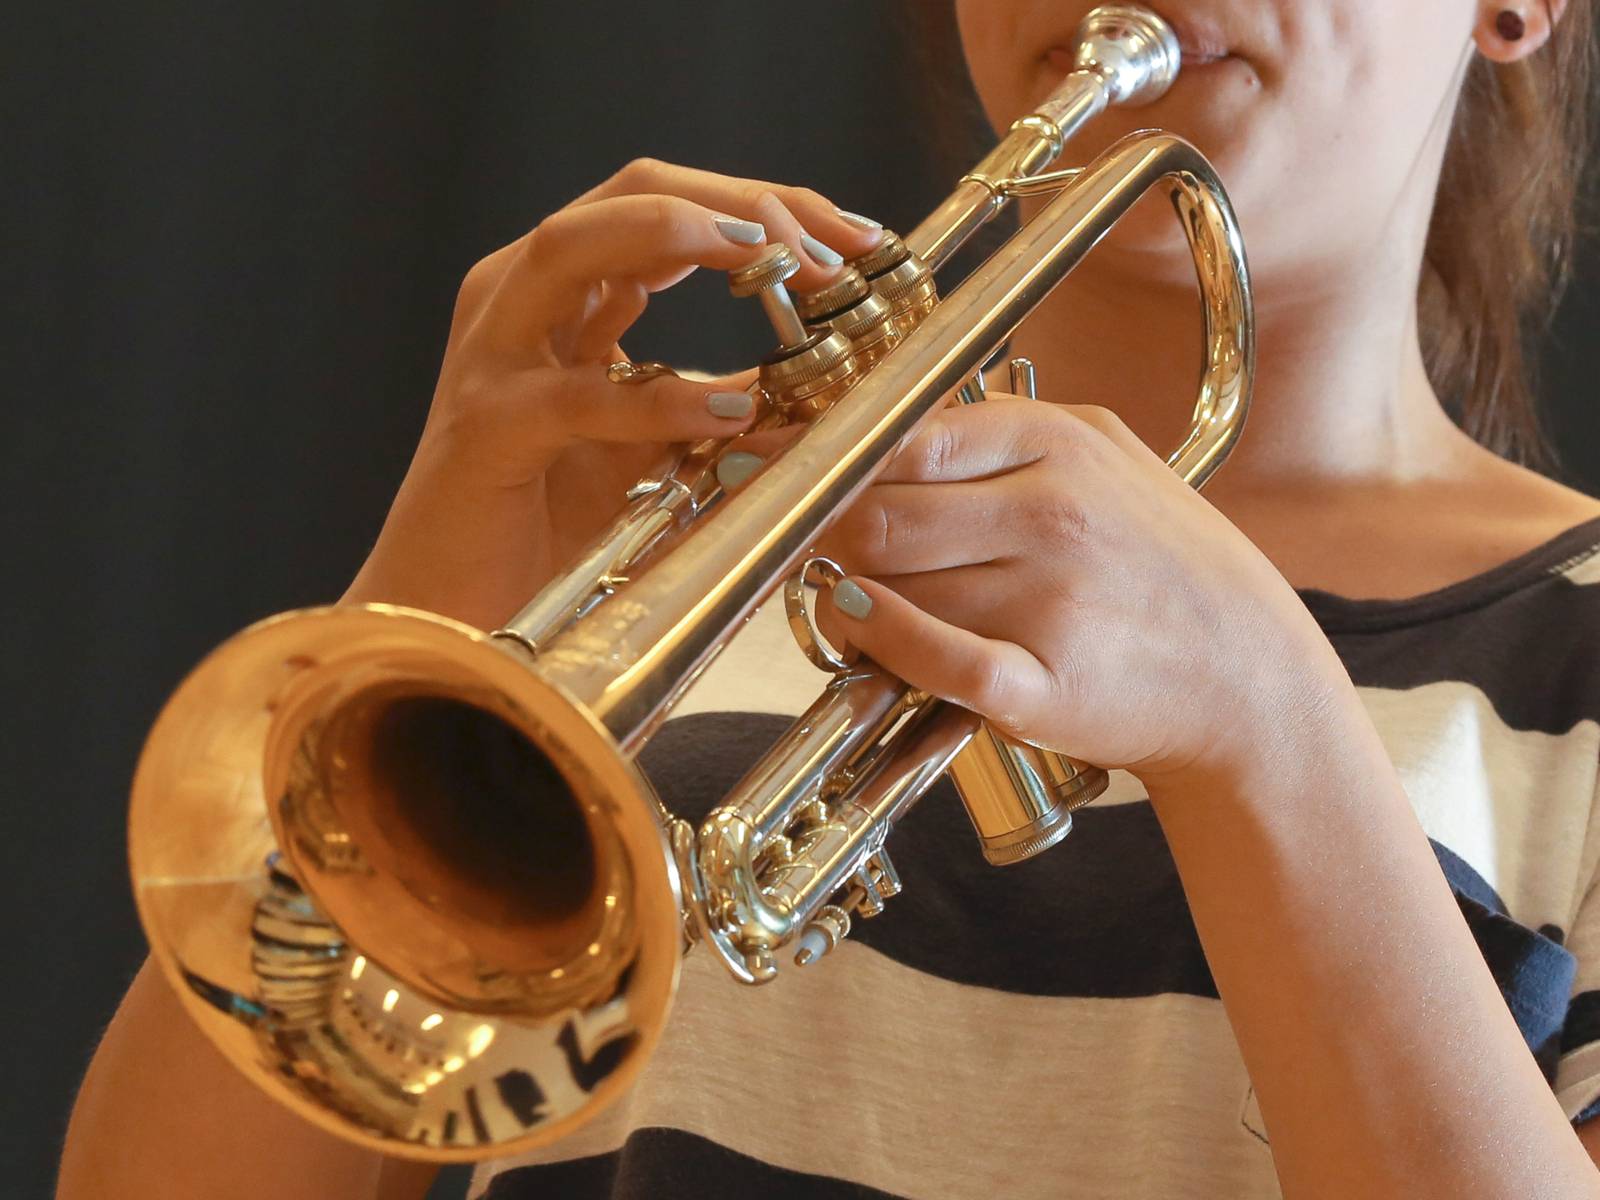 https://www.hannover.de/var/storage/images/_aliases/alias_1600xVariabel/media/01-data-neu/bilder/landeshauptstadt-hannover/kultur-freizeit/musikschule/instrumente/jazz-trompete2/13464717-1-ger-DE/Jazz-Trompete.jpg